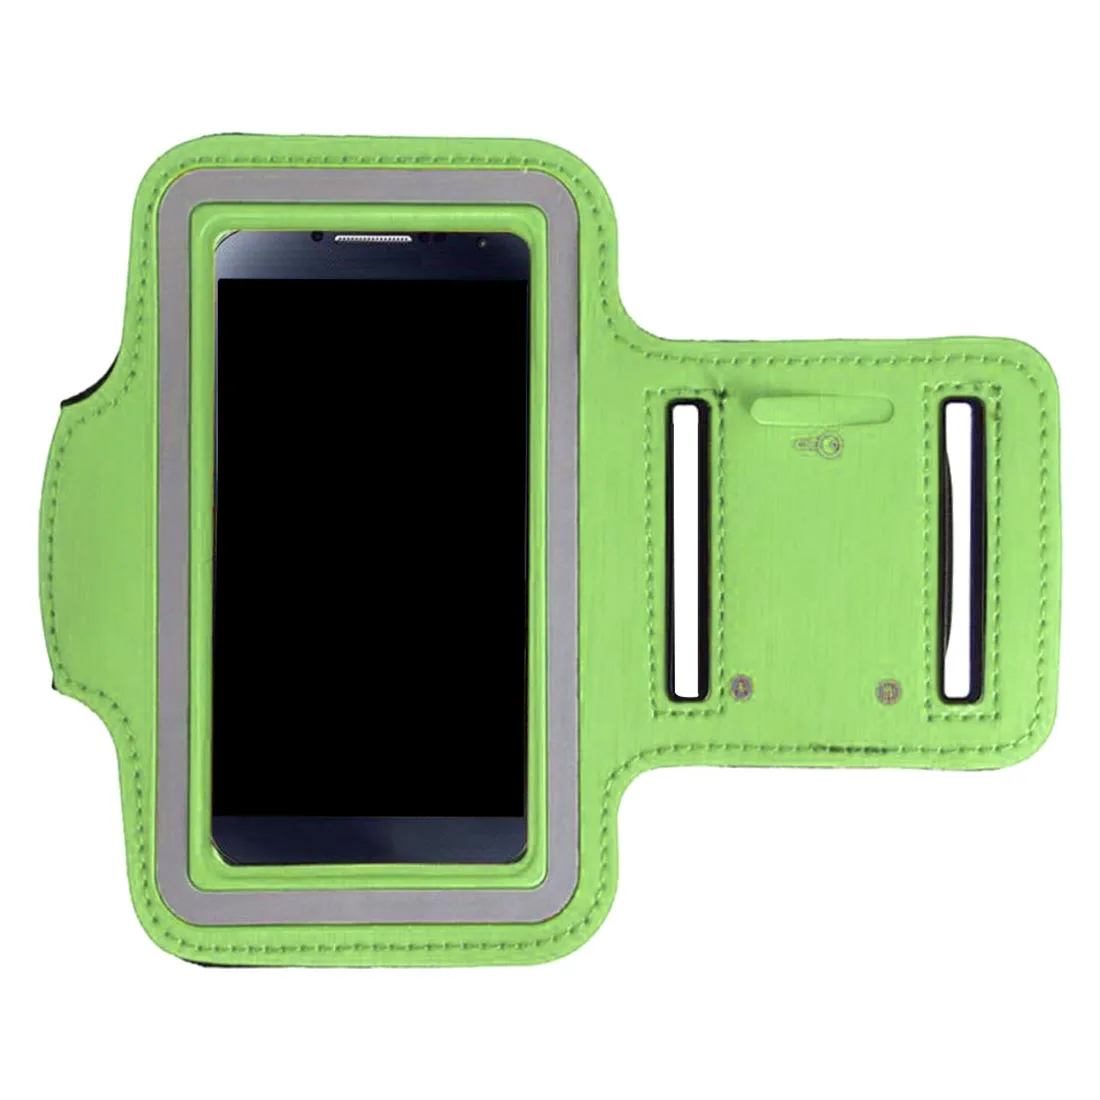 Новые сумки для бега для мужчин и женщин, нарукавная повязка с сенсорным экраном для сотового телефона, чехол для телефона, спортивные аксессуары для смартфона 7 Plus - Цвет: Green